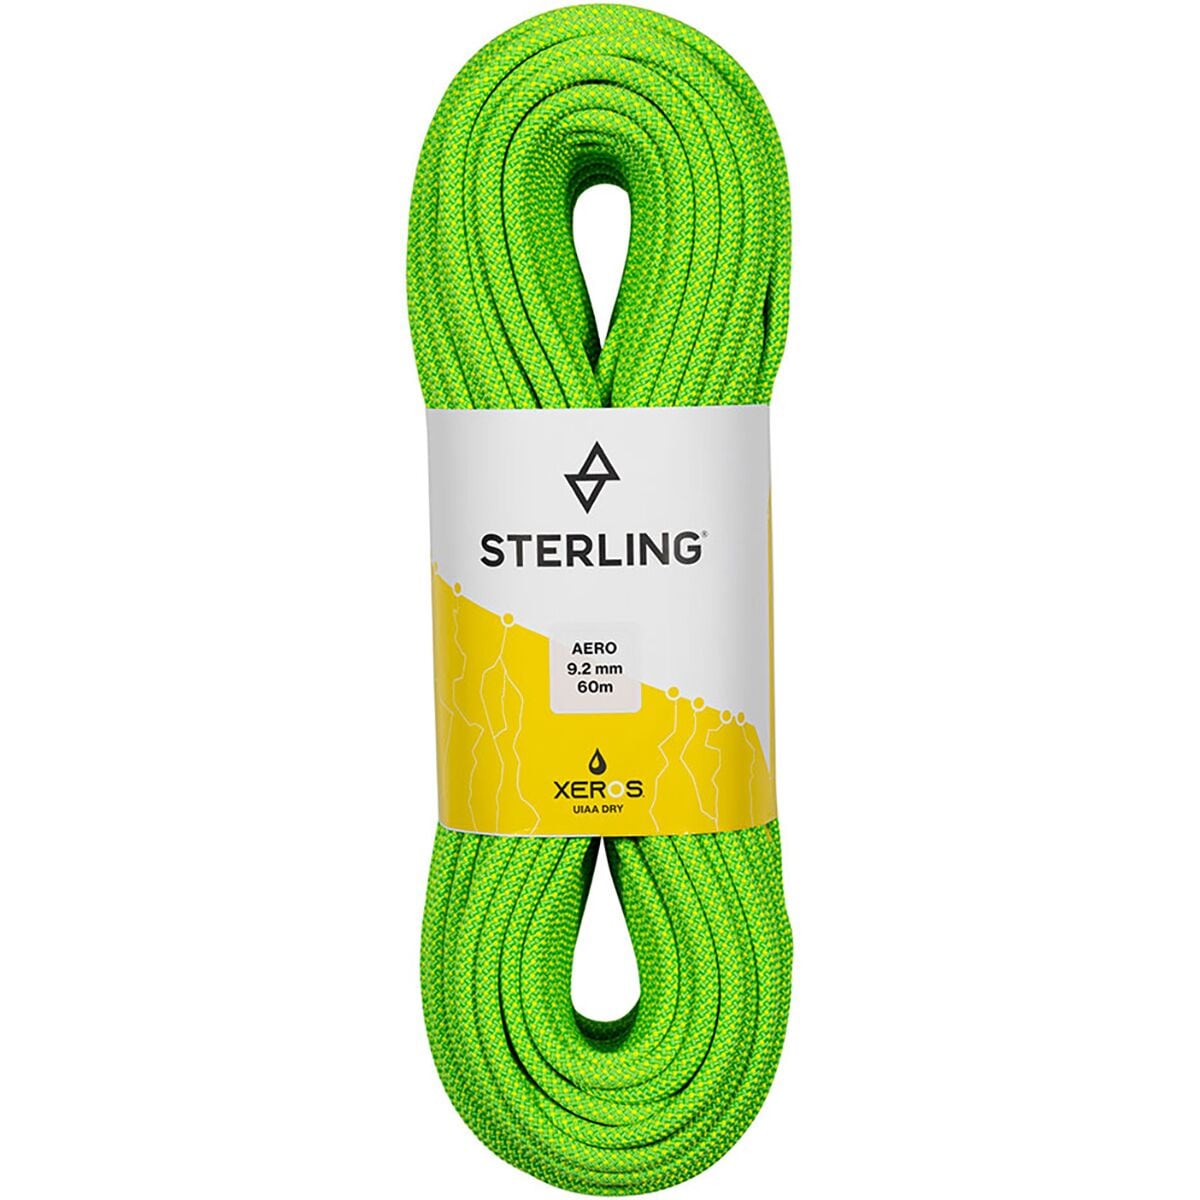 Sterling Aero 9.2 BiColor XEROS Rope